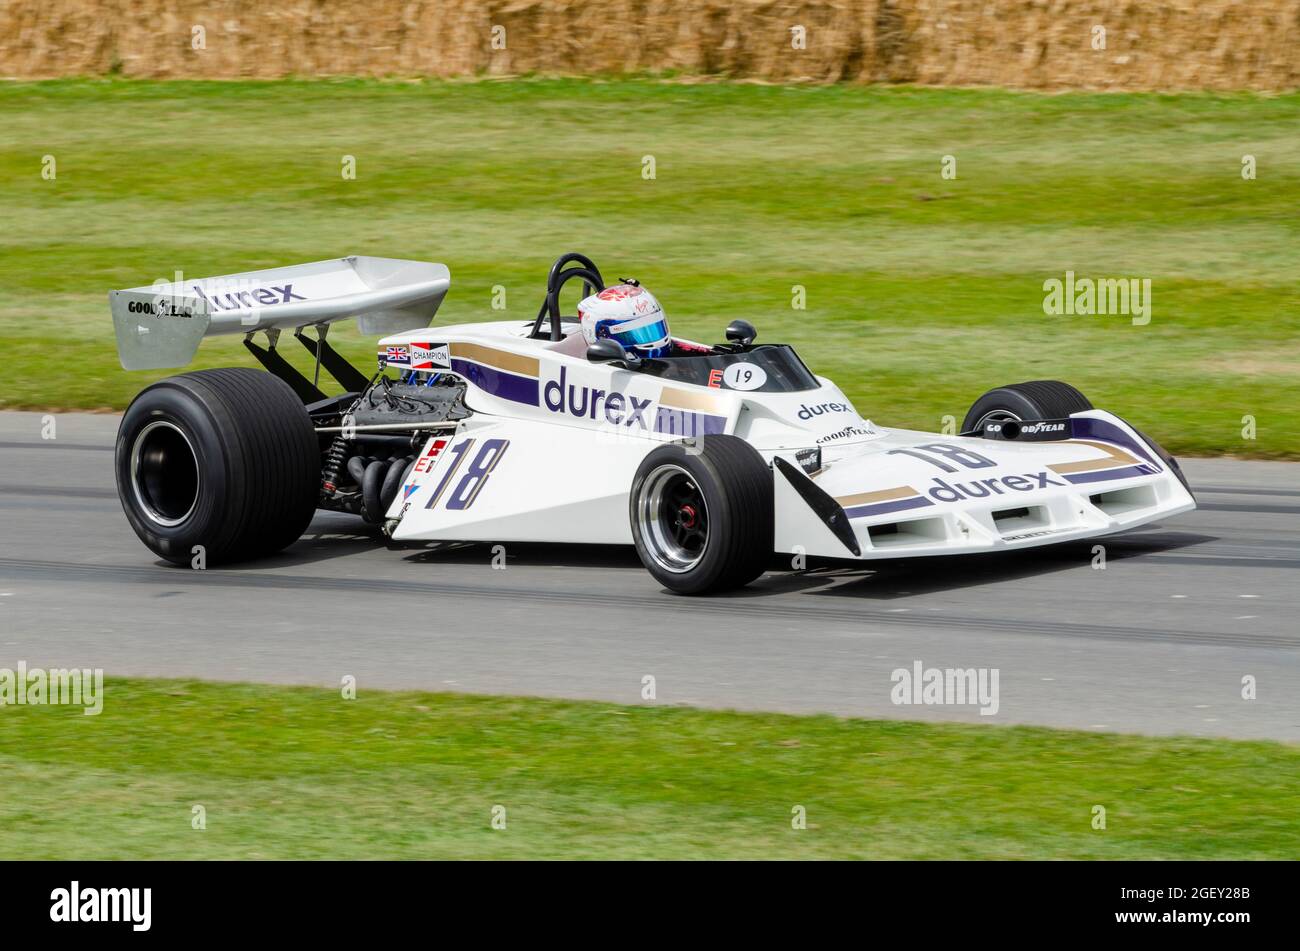 Surtees TS19 Formel 1, Grand-Prix-Rennwagen, der beim Goodwood Festival of Speed Motor Racing Event 2014 die Bergrennen-Strecke hochfährt. Durex Sponsor Stockfoto